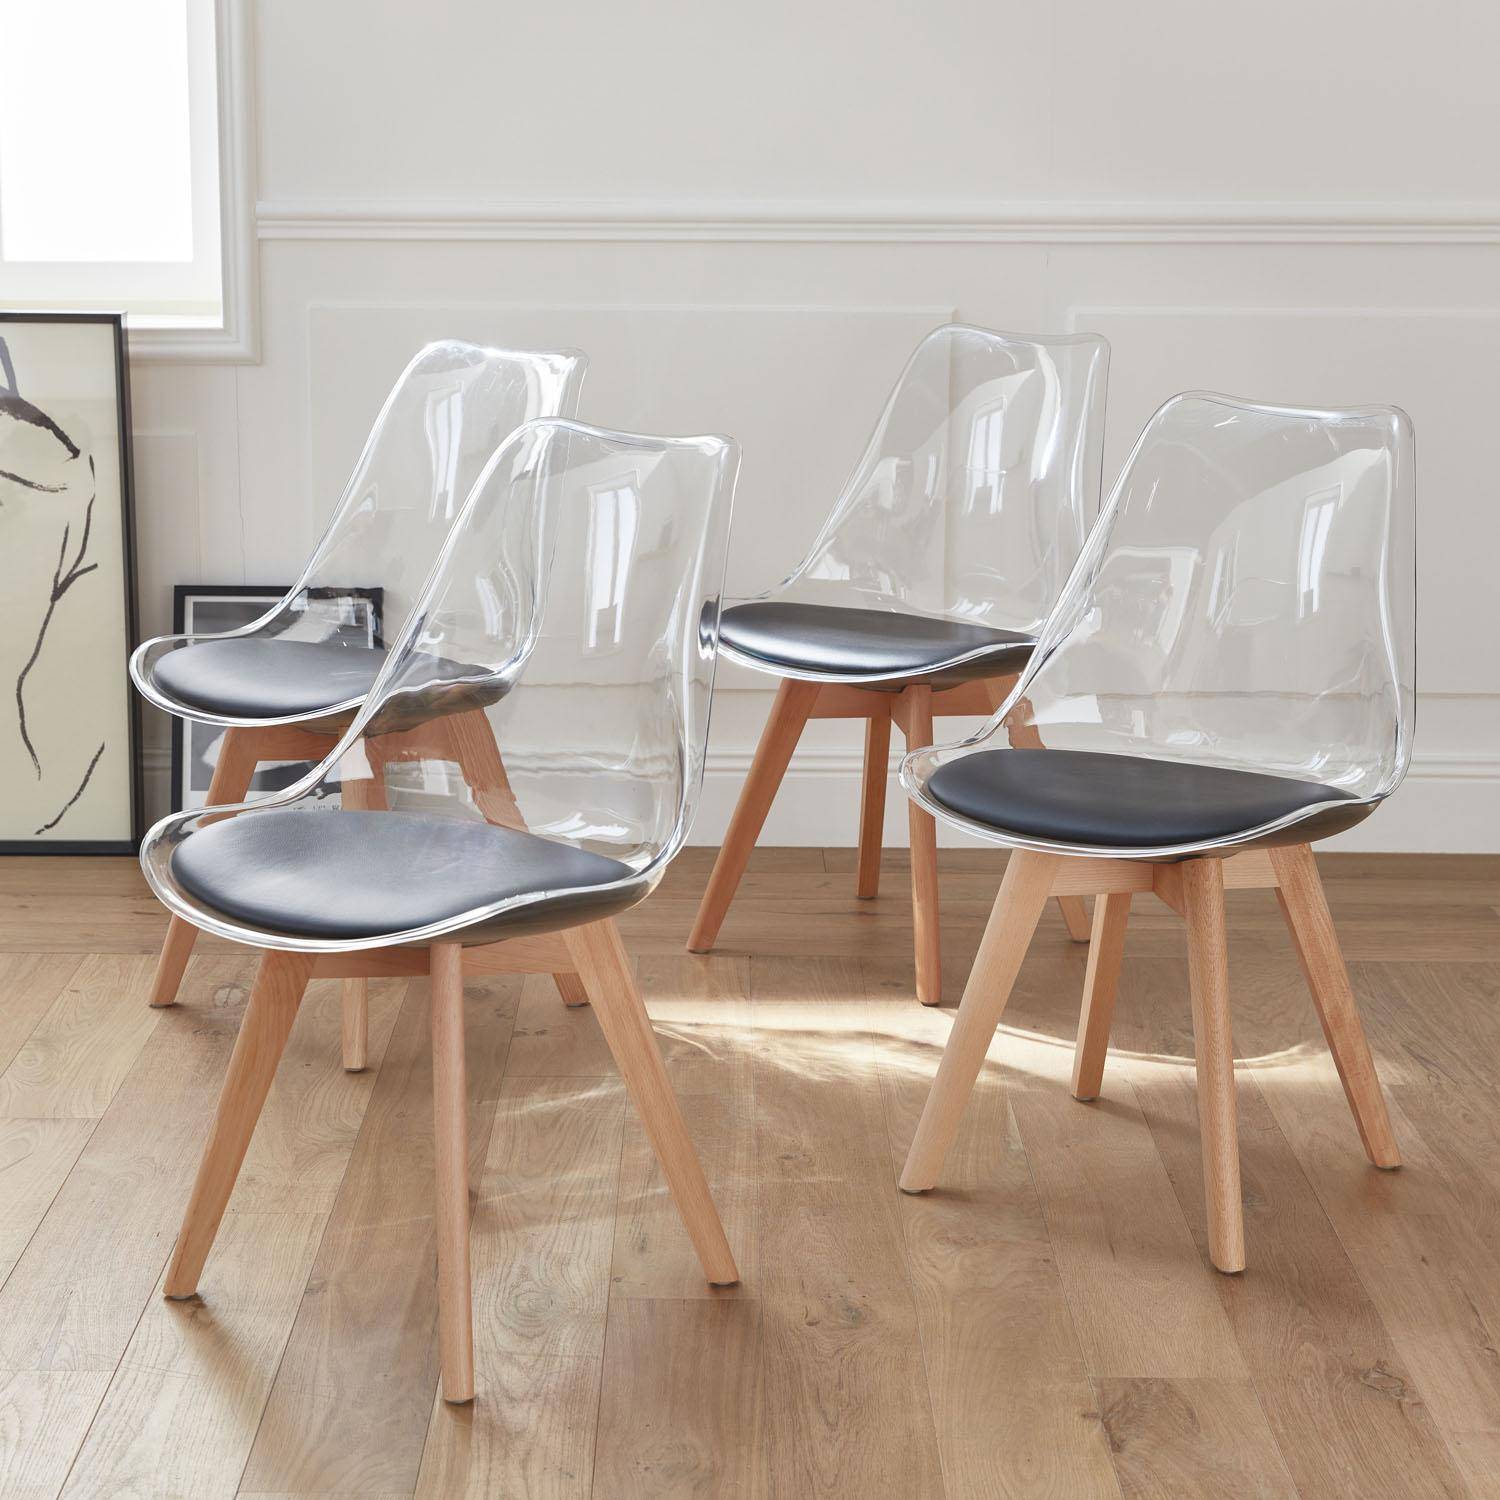 4er Set Stühle im skandinavischen Stil - Lagertha - Holzbeine, Ein Sitz, schwarzes Kissen, transparente Sitzschale Photo1